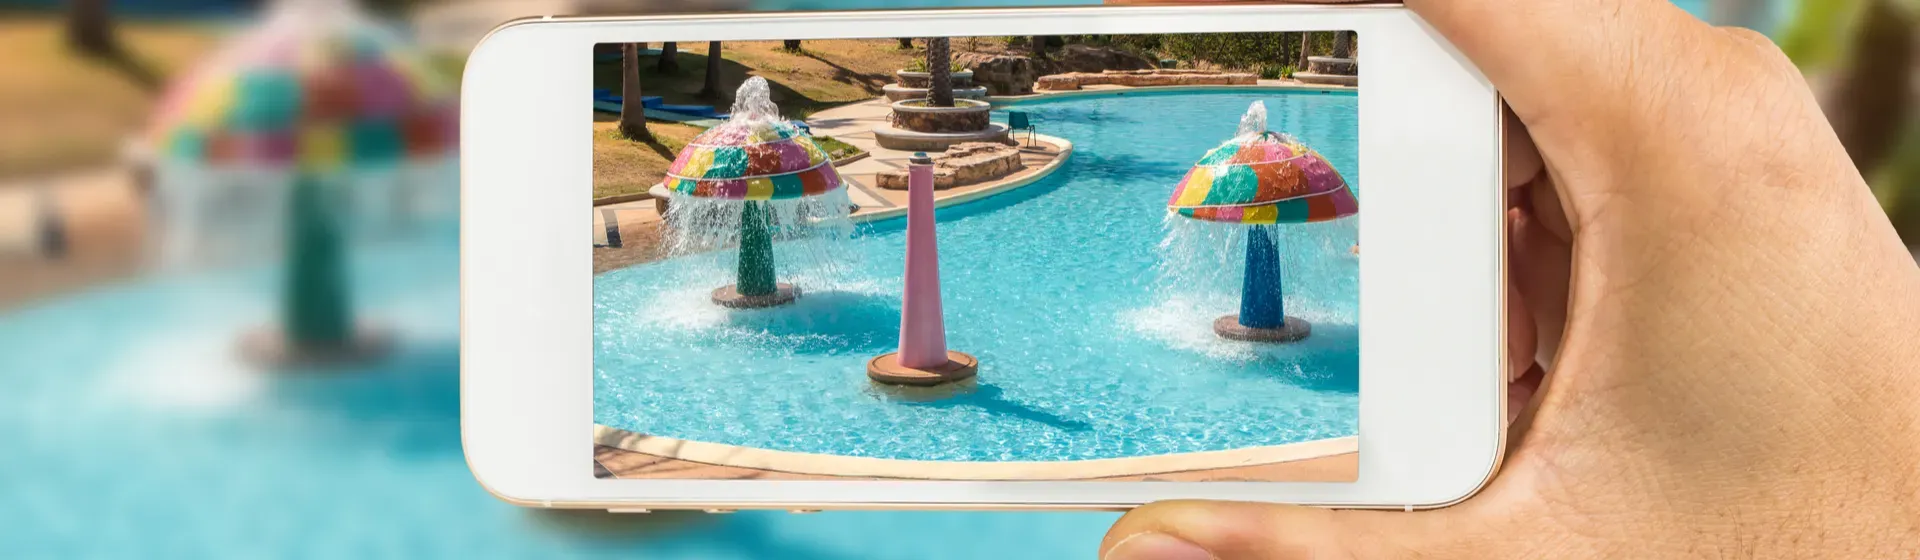 Celulares à prova d’água para tirar fotos na piscina ou praia em 2022